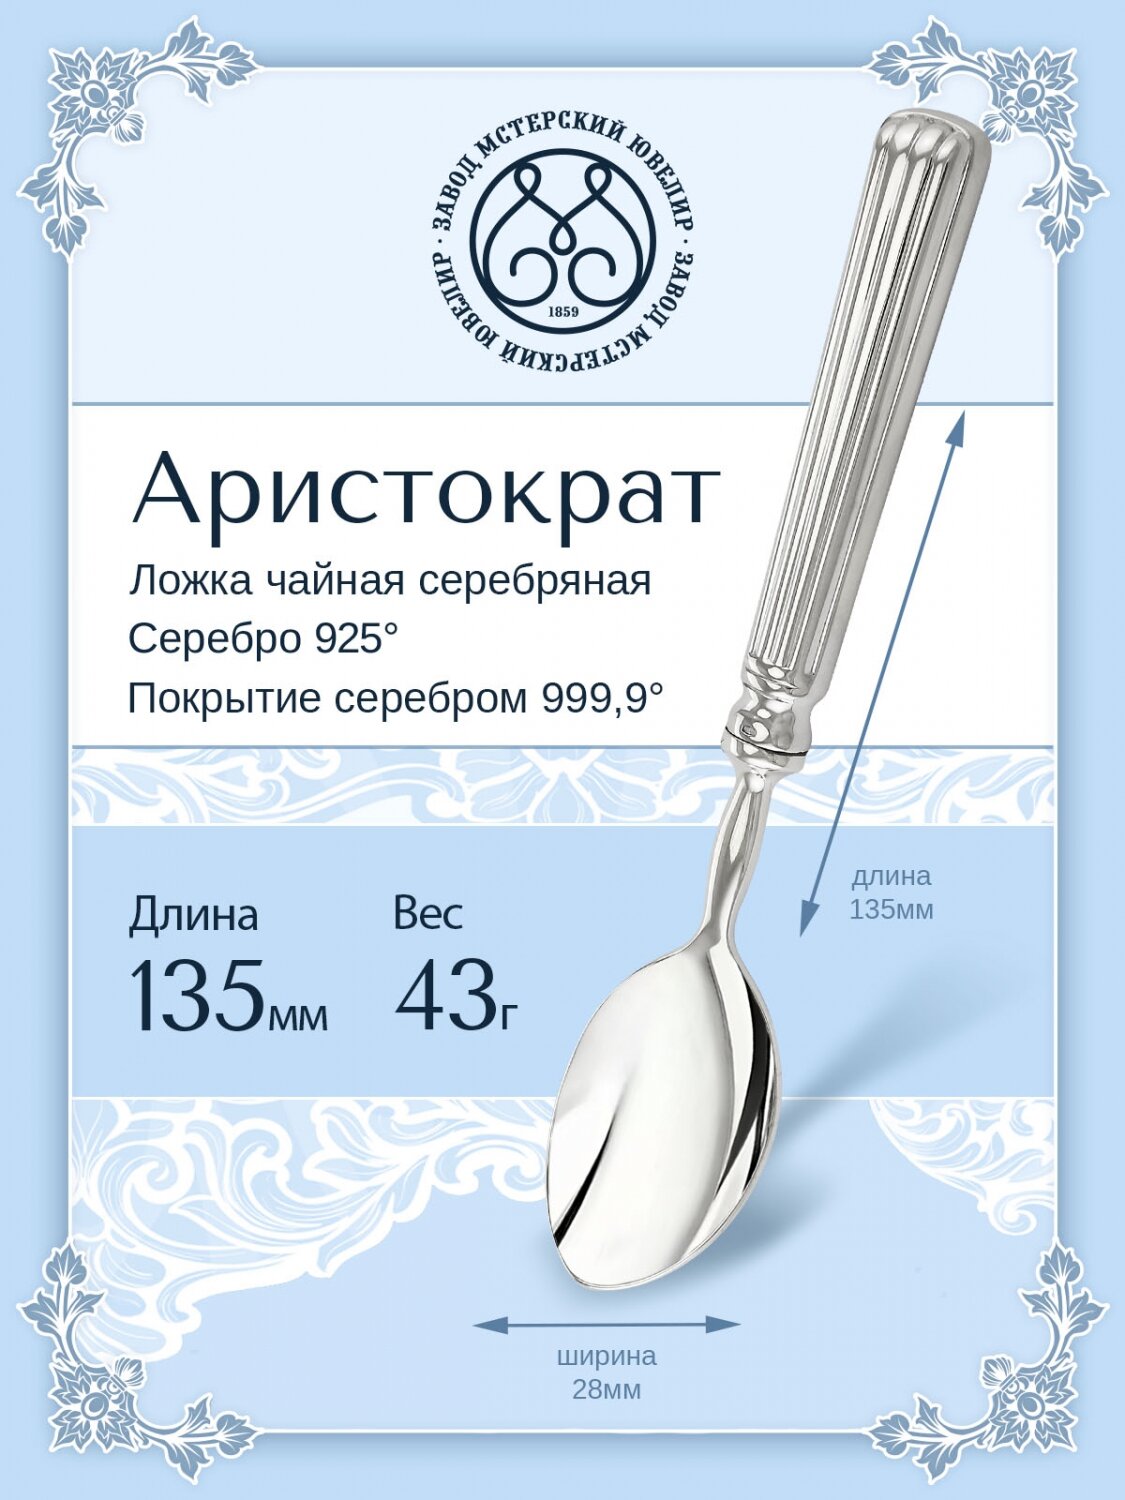 Ложка чайная серебряная "Аристократ" от бренда Мстерский ювелир